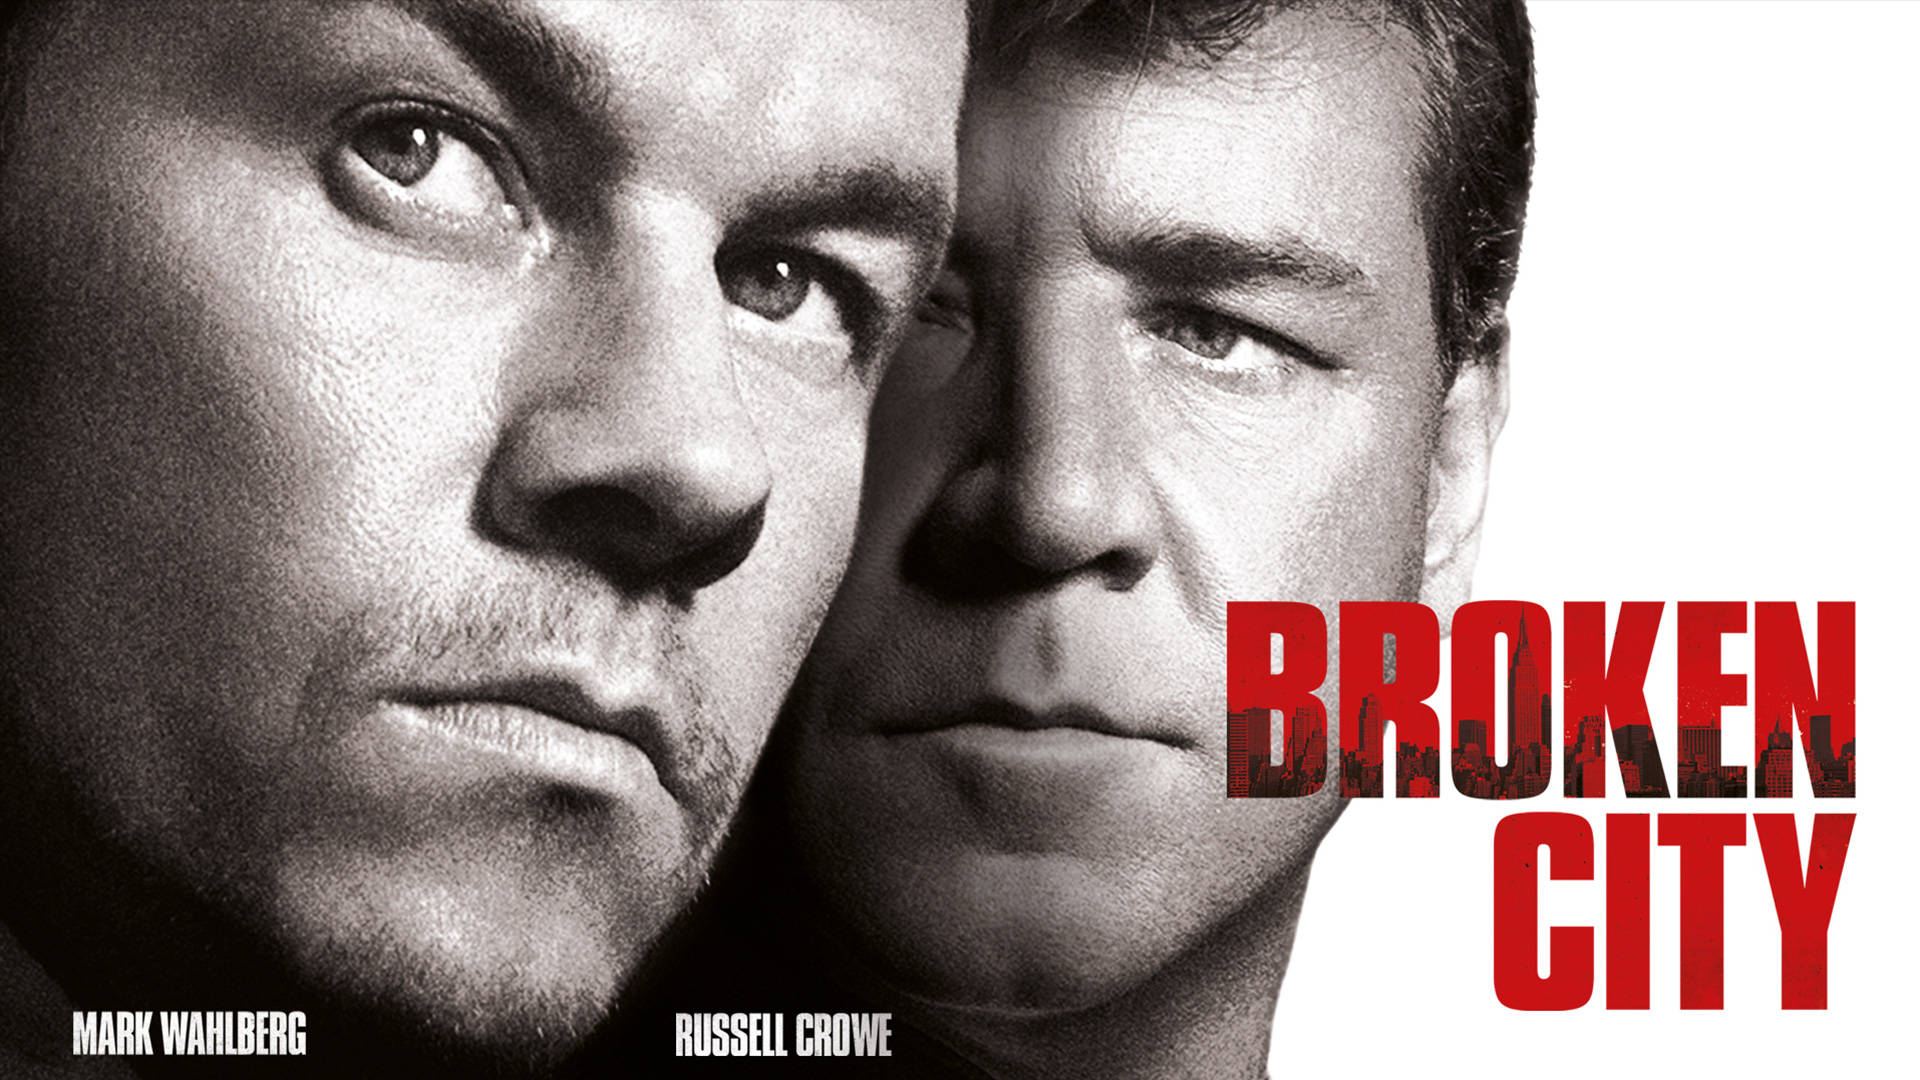 Russell Crowe Broken City